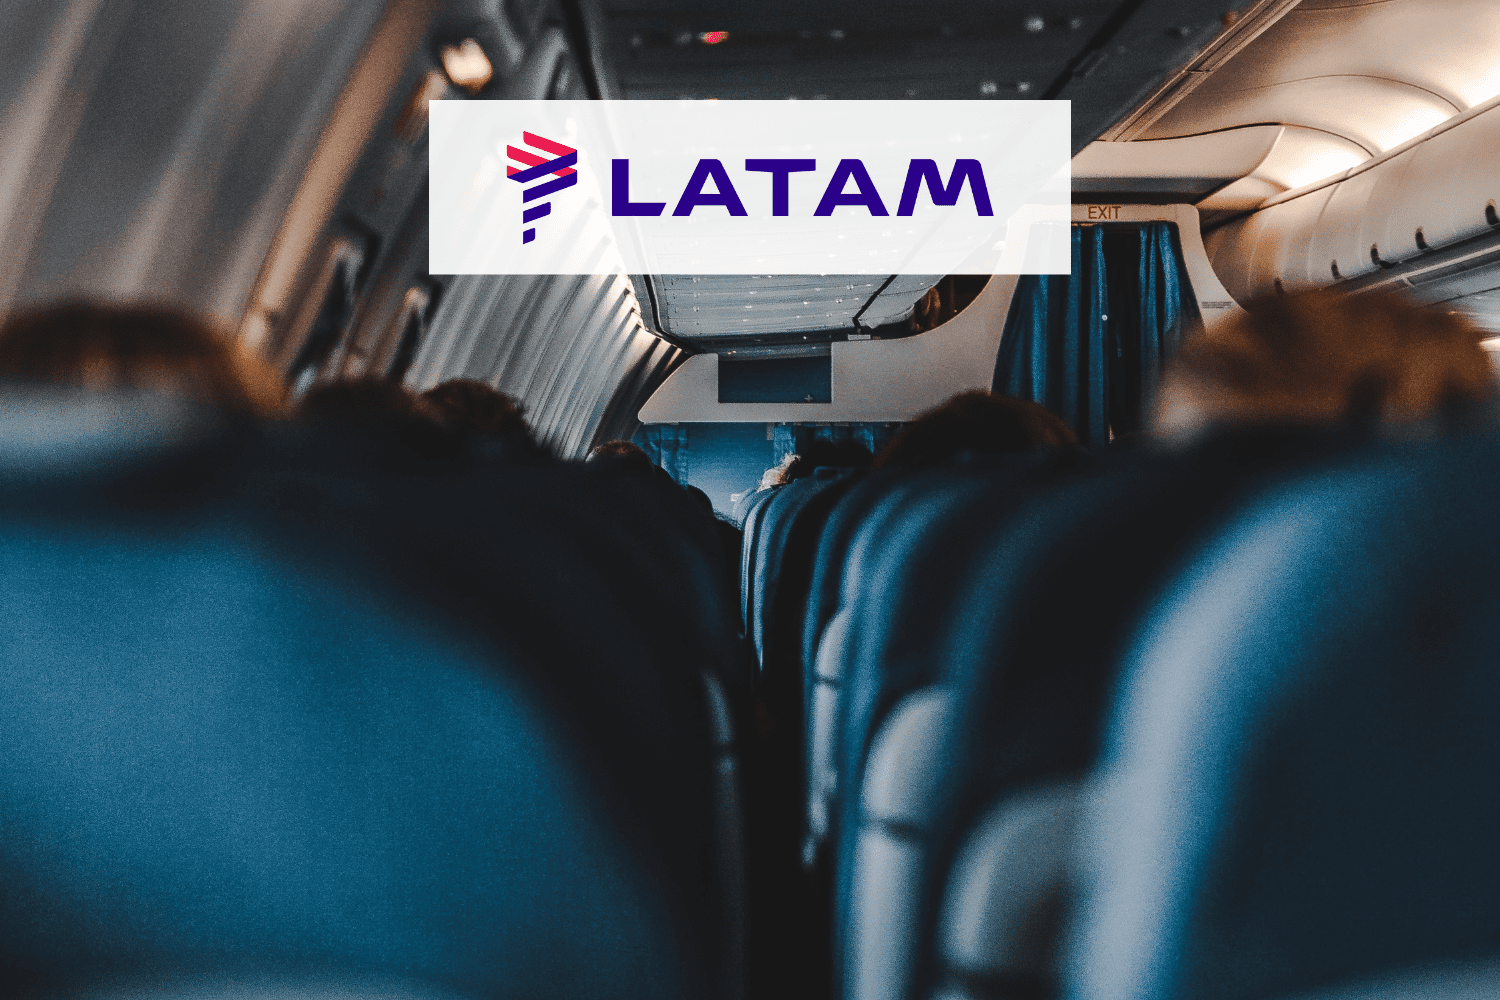 assentos de avião com logo Latam